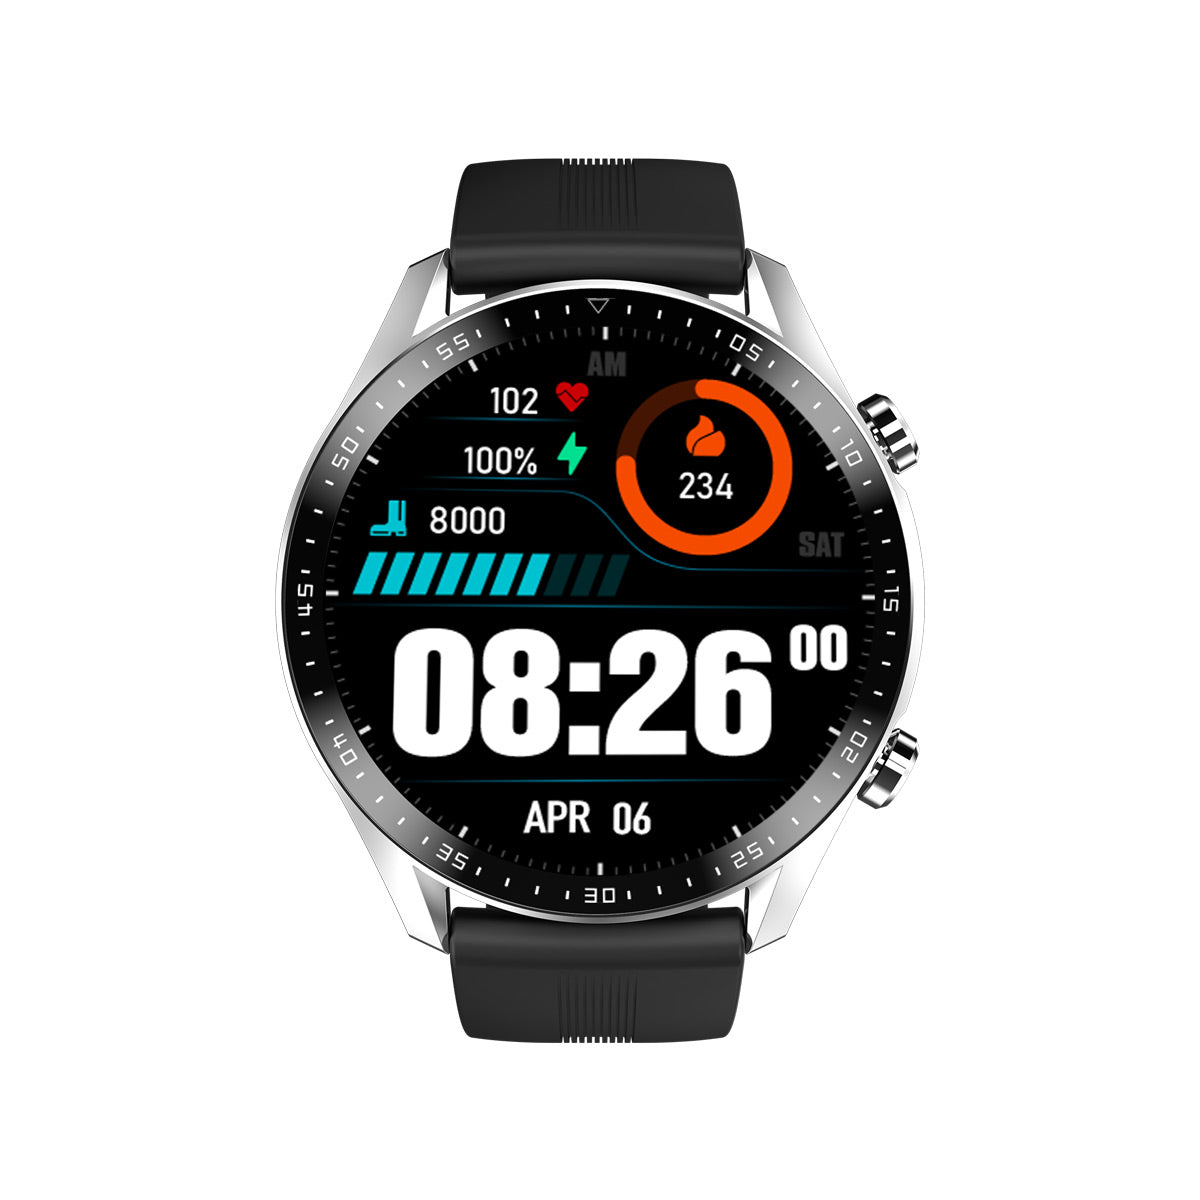 Blackview X1 Pro 10-meter Water-resistant Sports Smart Watch